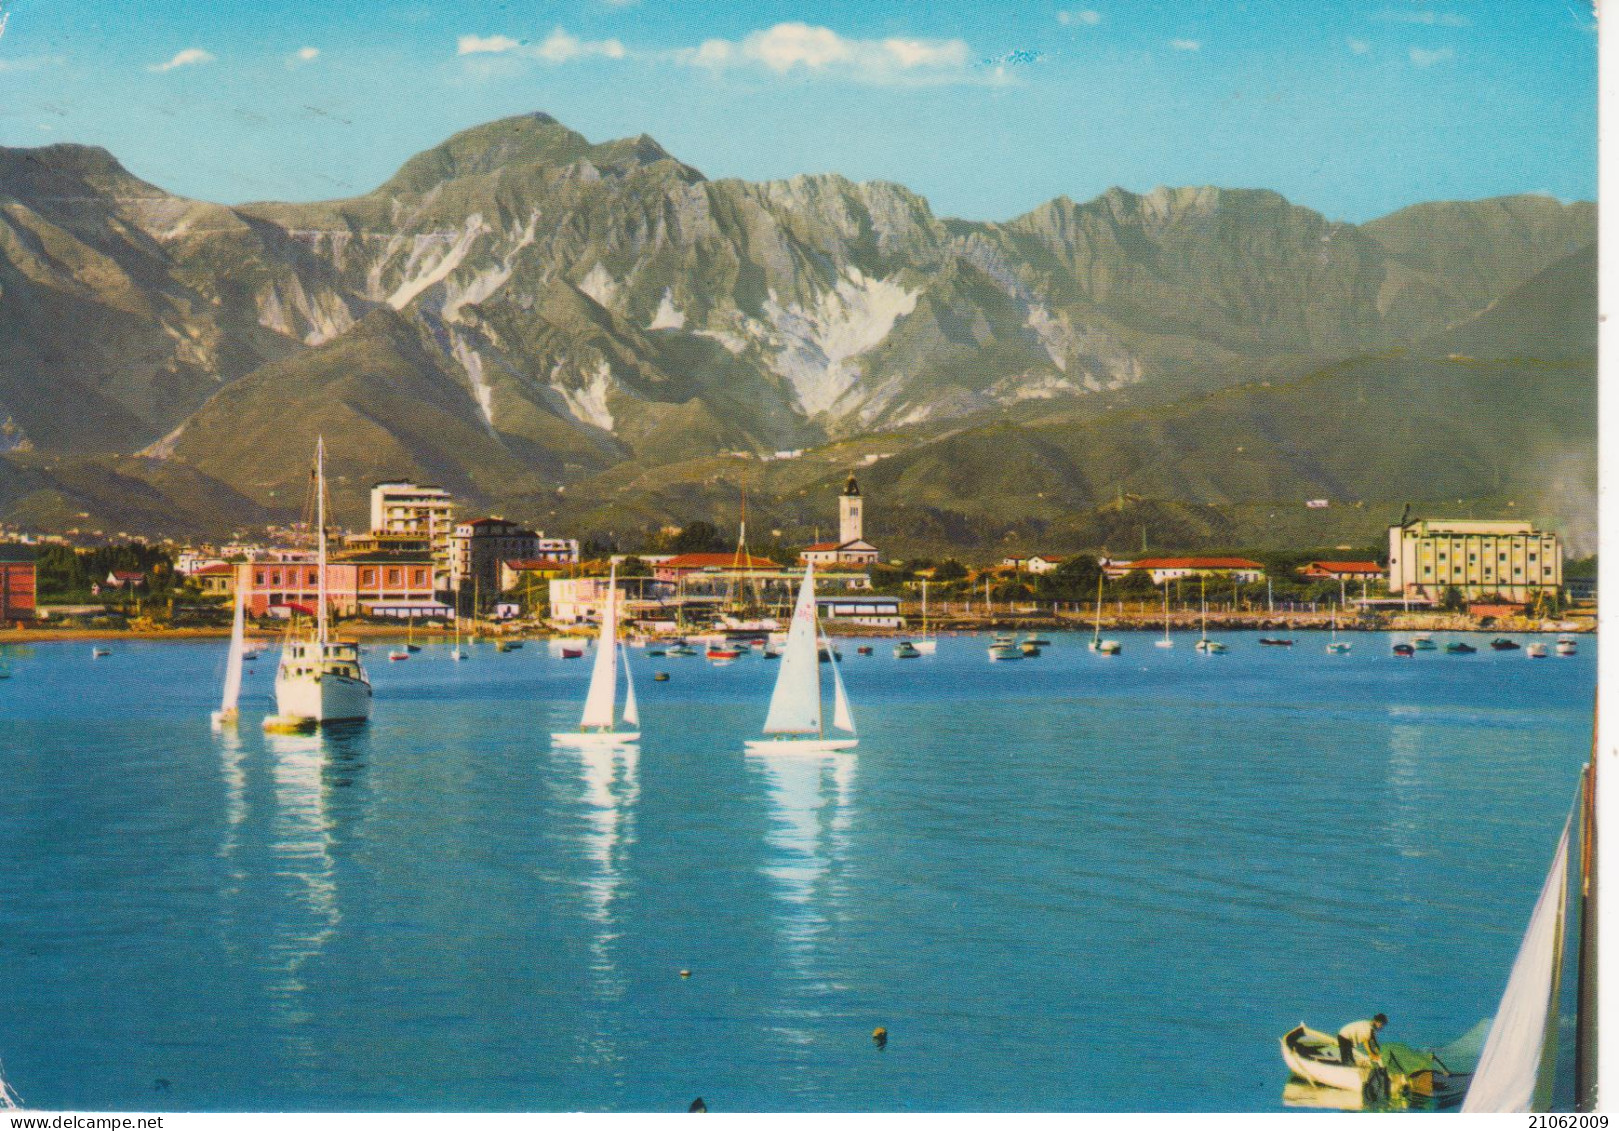 MARINA DI CARRARA - IL PORTO E SULLO SFONDO LE ALPI APUANE - NAVI BARCHE SHIPS - V1981 - Carrara